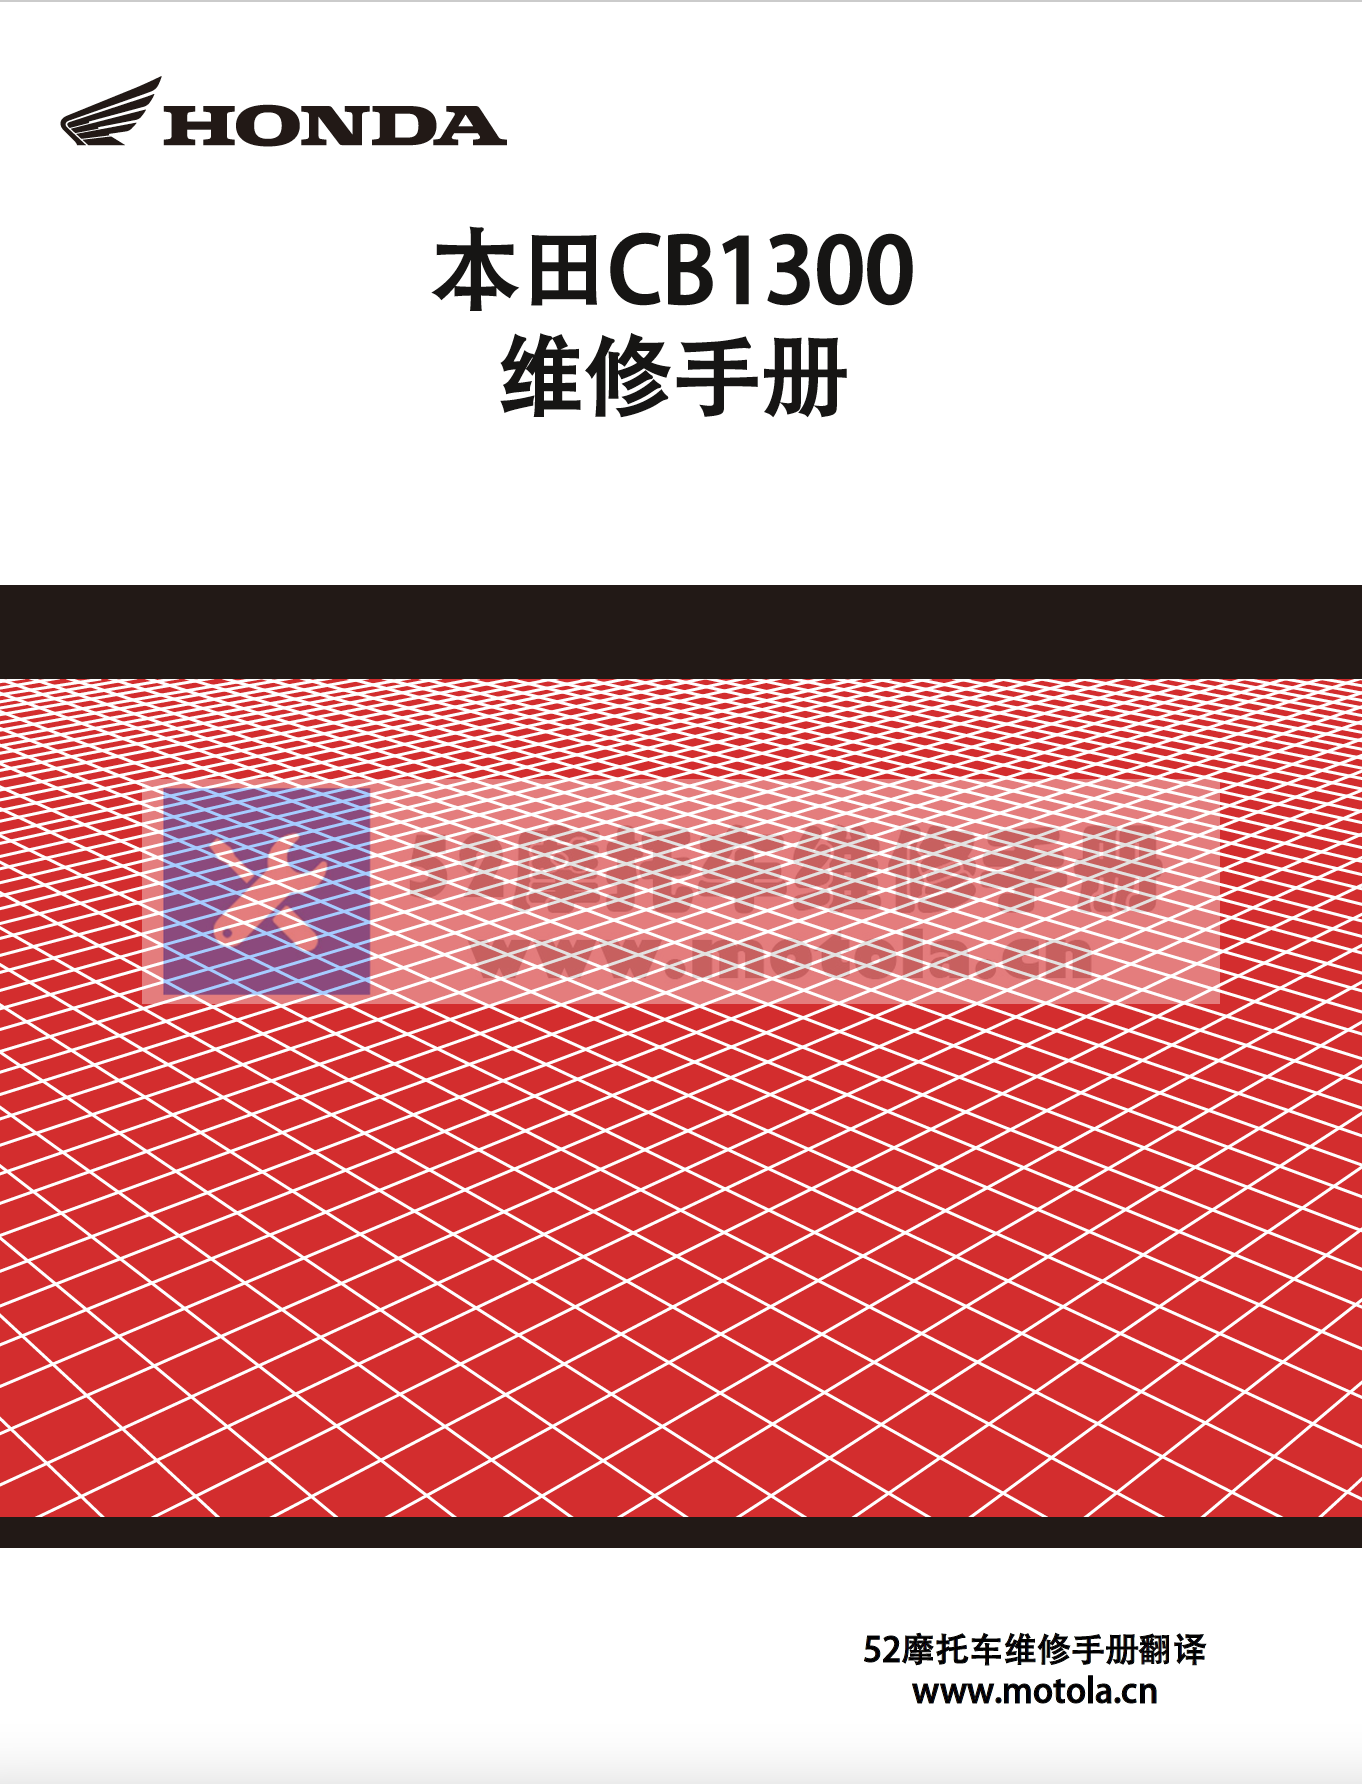 简体中文版2008-2013本田CB1300维修手册插图1